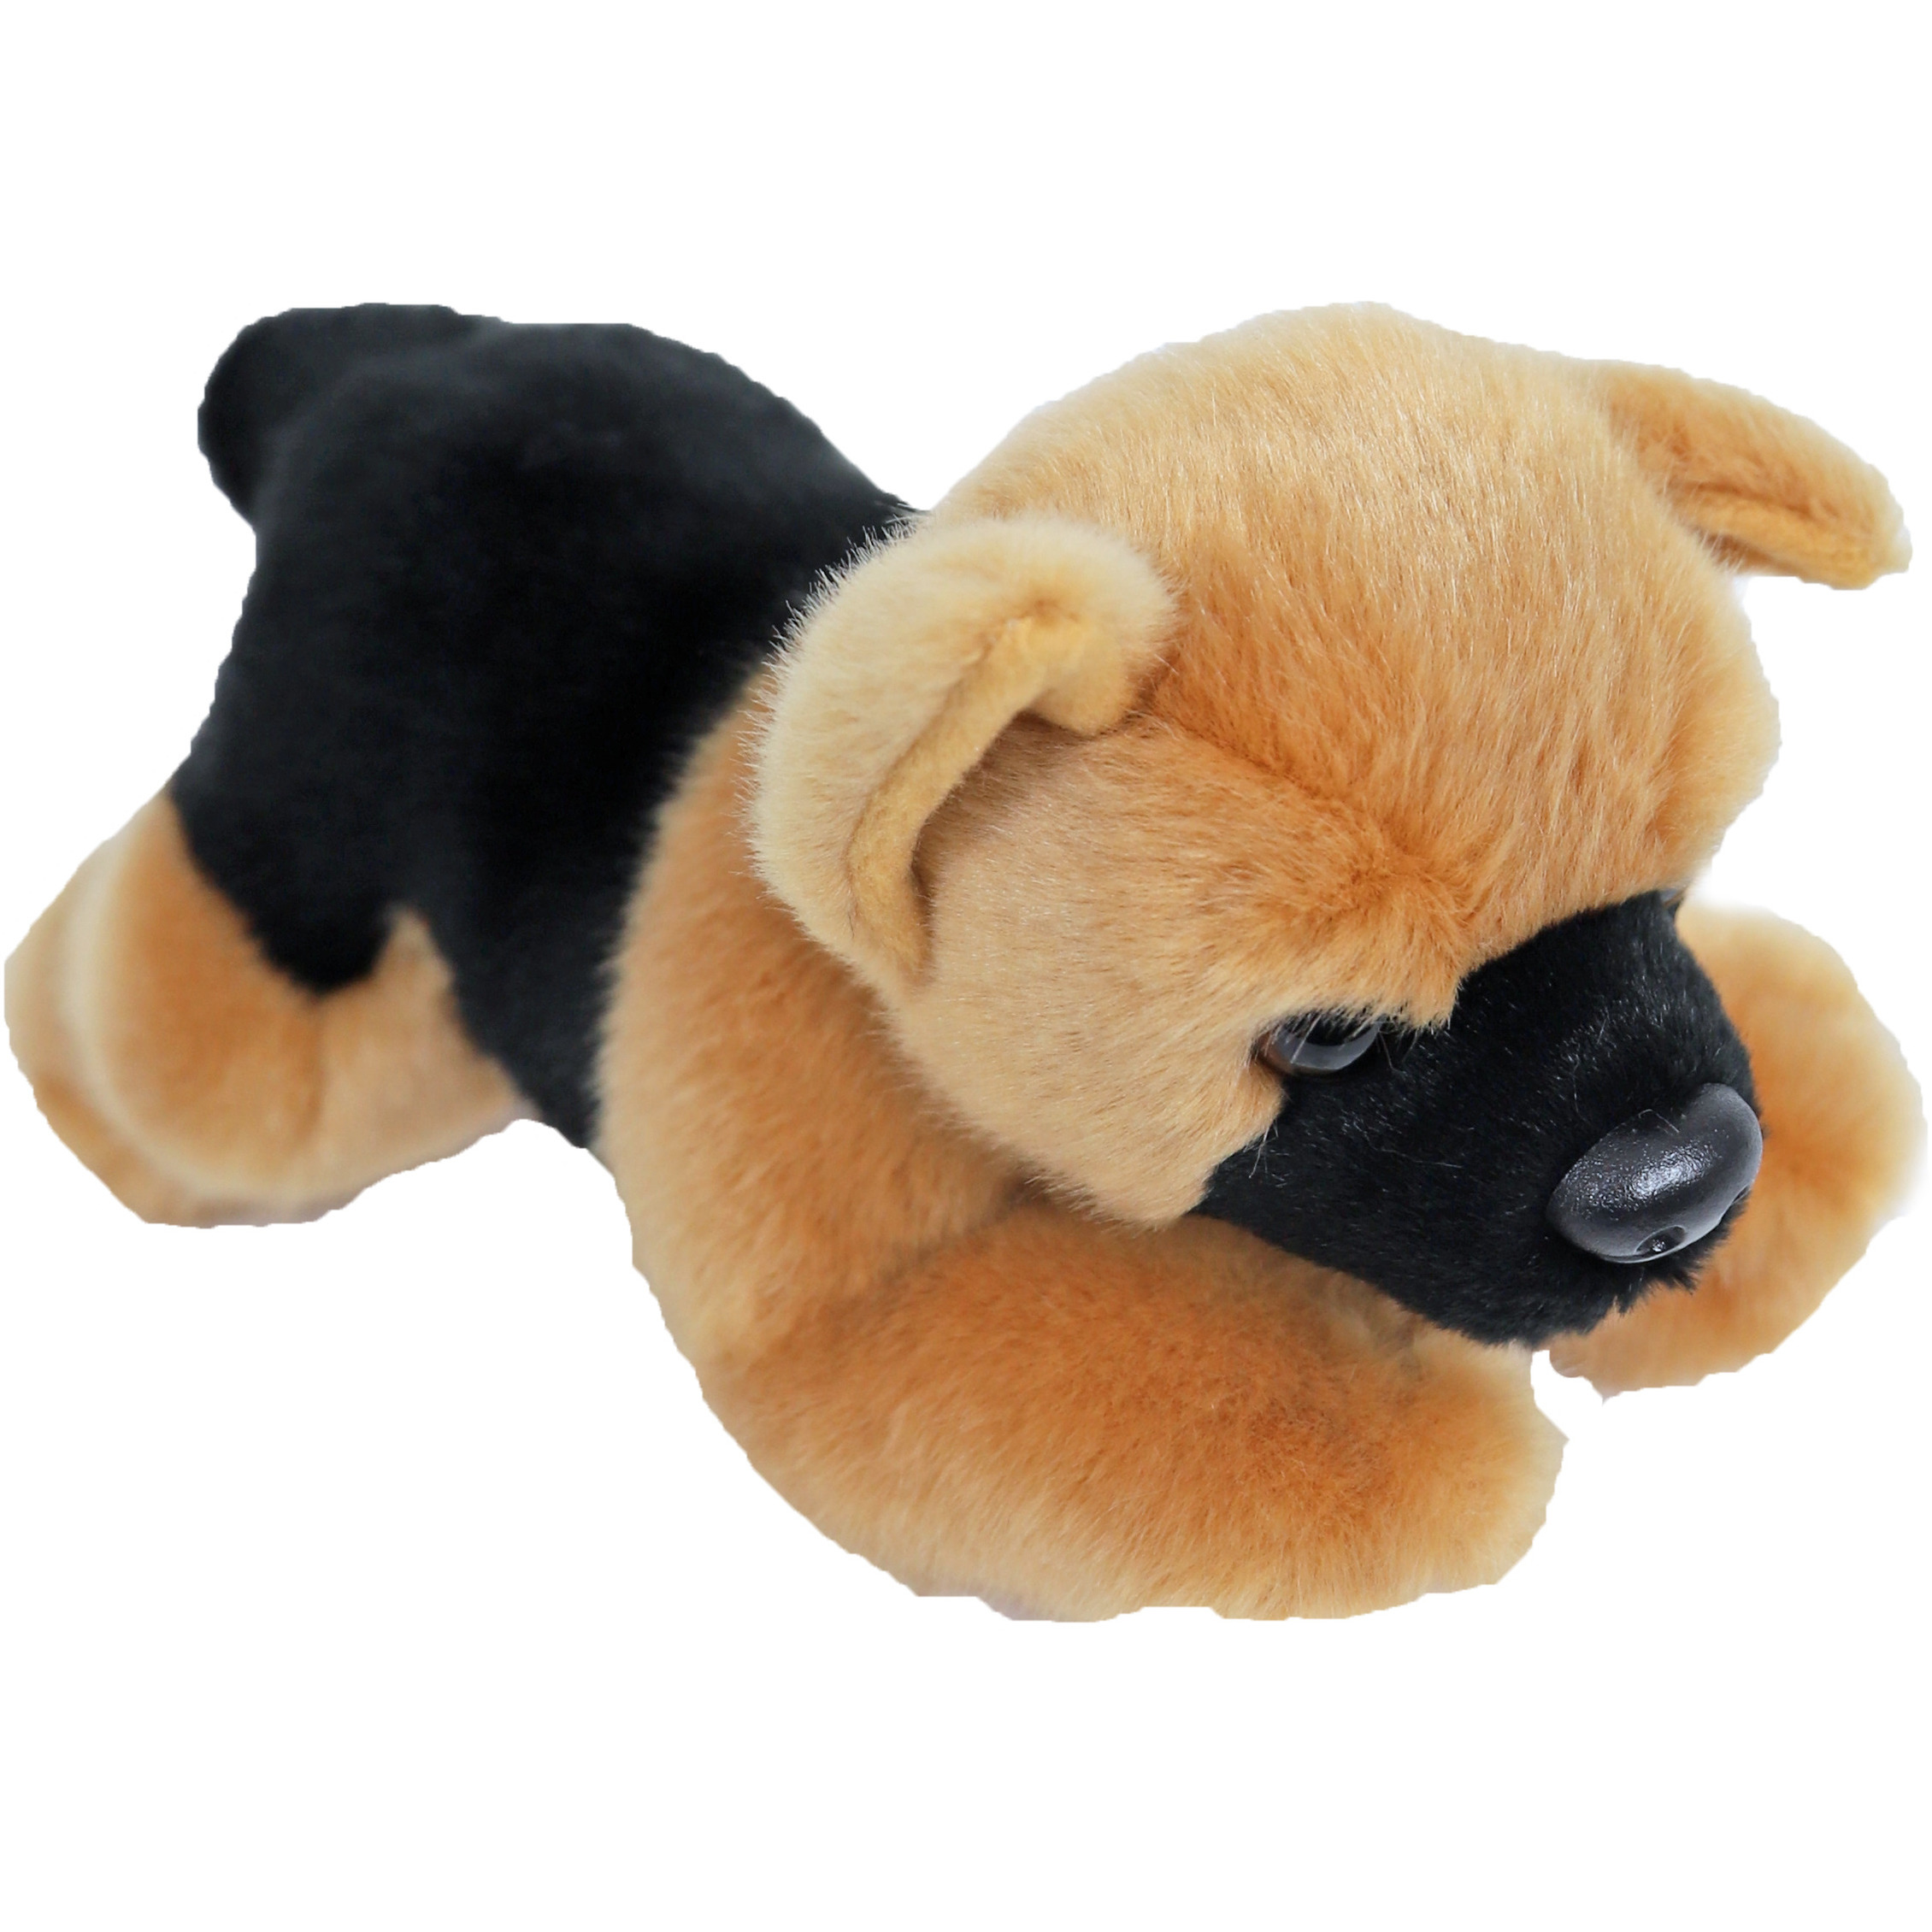 Knuffel Duitse Herder hond bruin-zwart 20 cm knuffels kopen